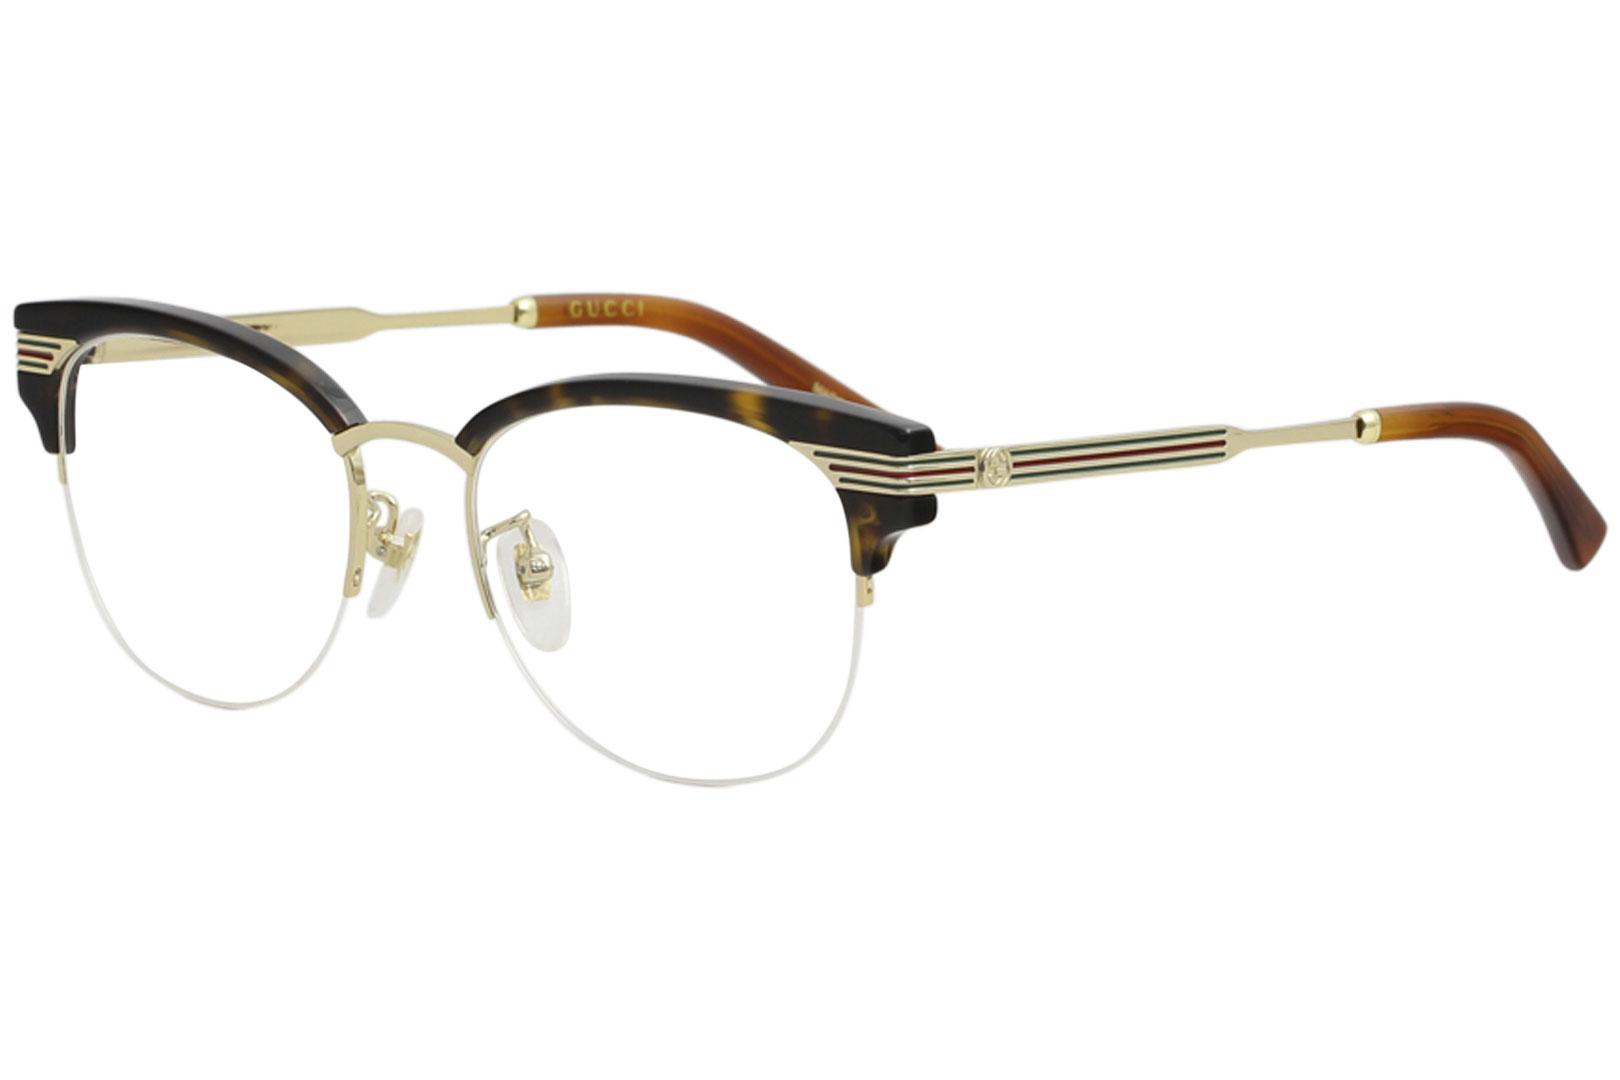 Gucci Women's Eyeglasses GG0201O GG/0201/O Full Rim Optical Frame - Black - Lens 50 Bridge 18 Temple 140mm